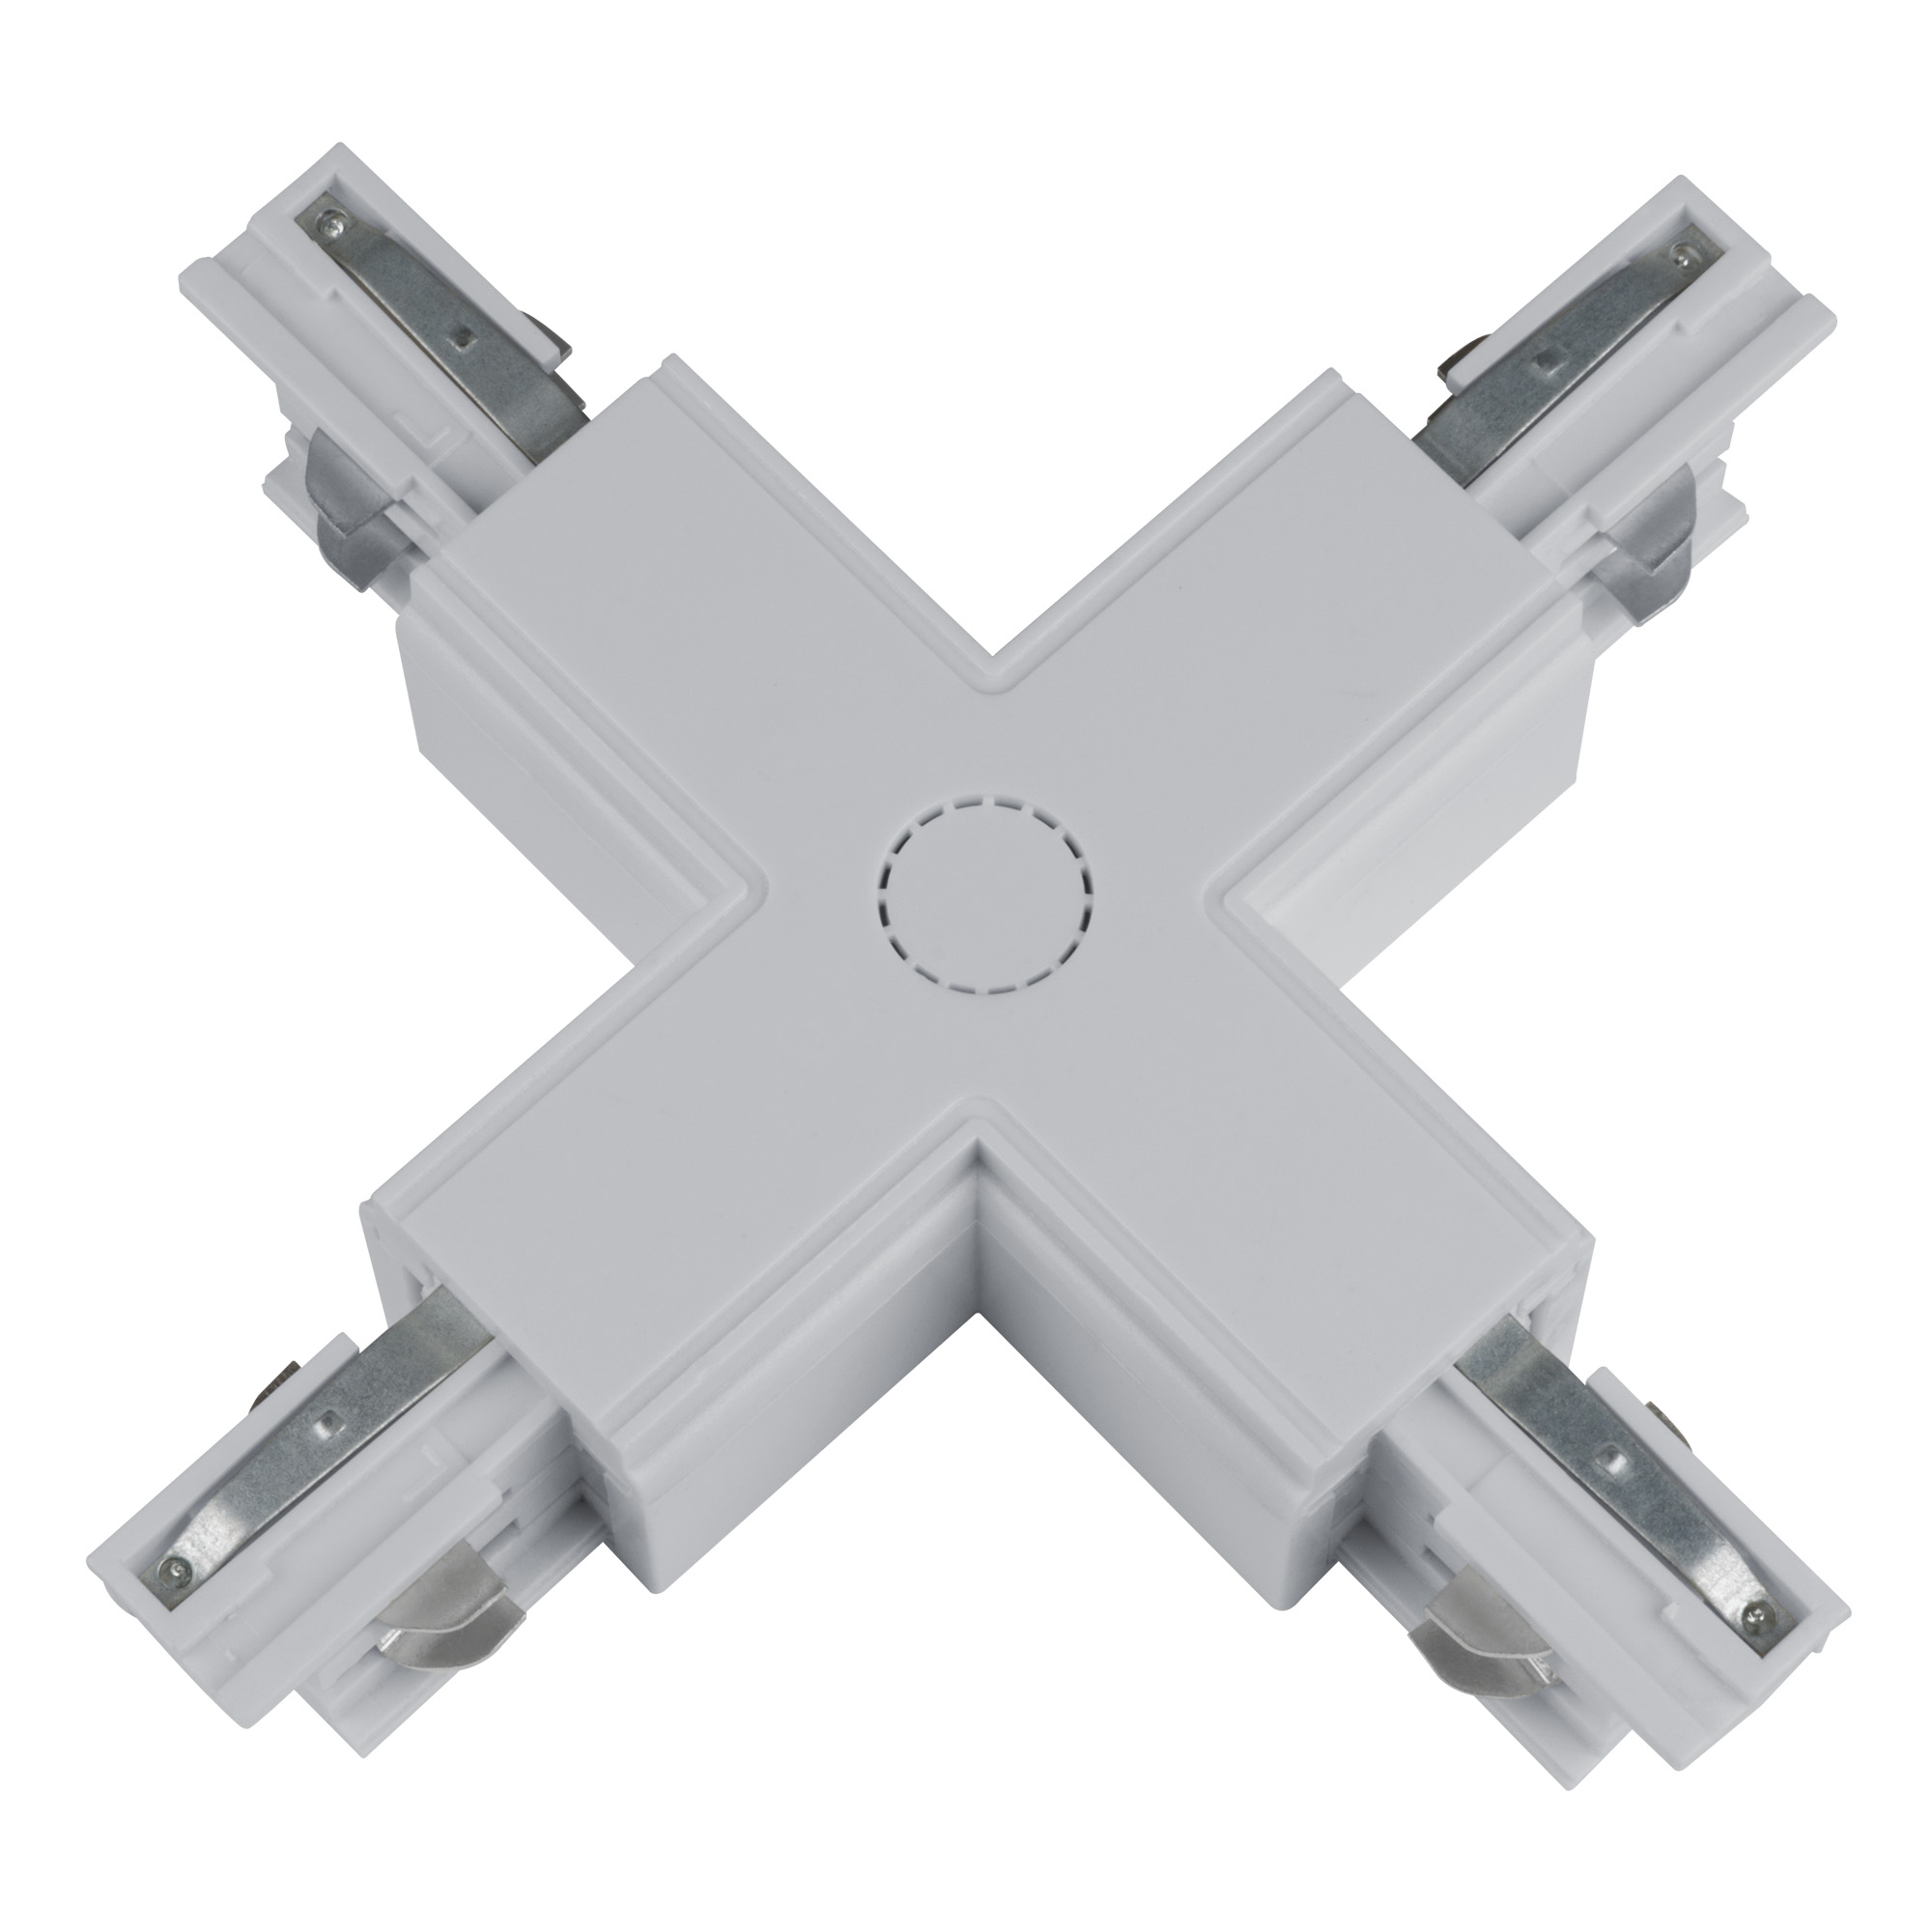 UBX-A41 SILVER 1 POLYBAG Соединитель для шинопроводов Х-образный. Цвет серебряный. Упаковка полиэтиленовый пакет.